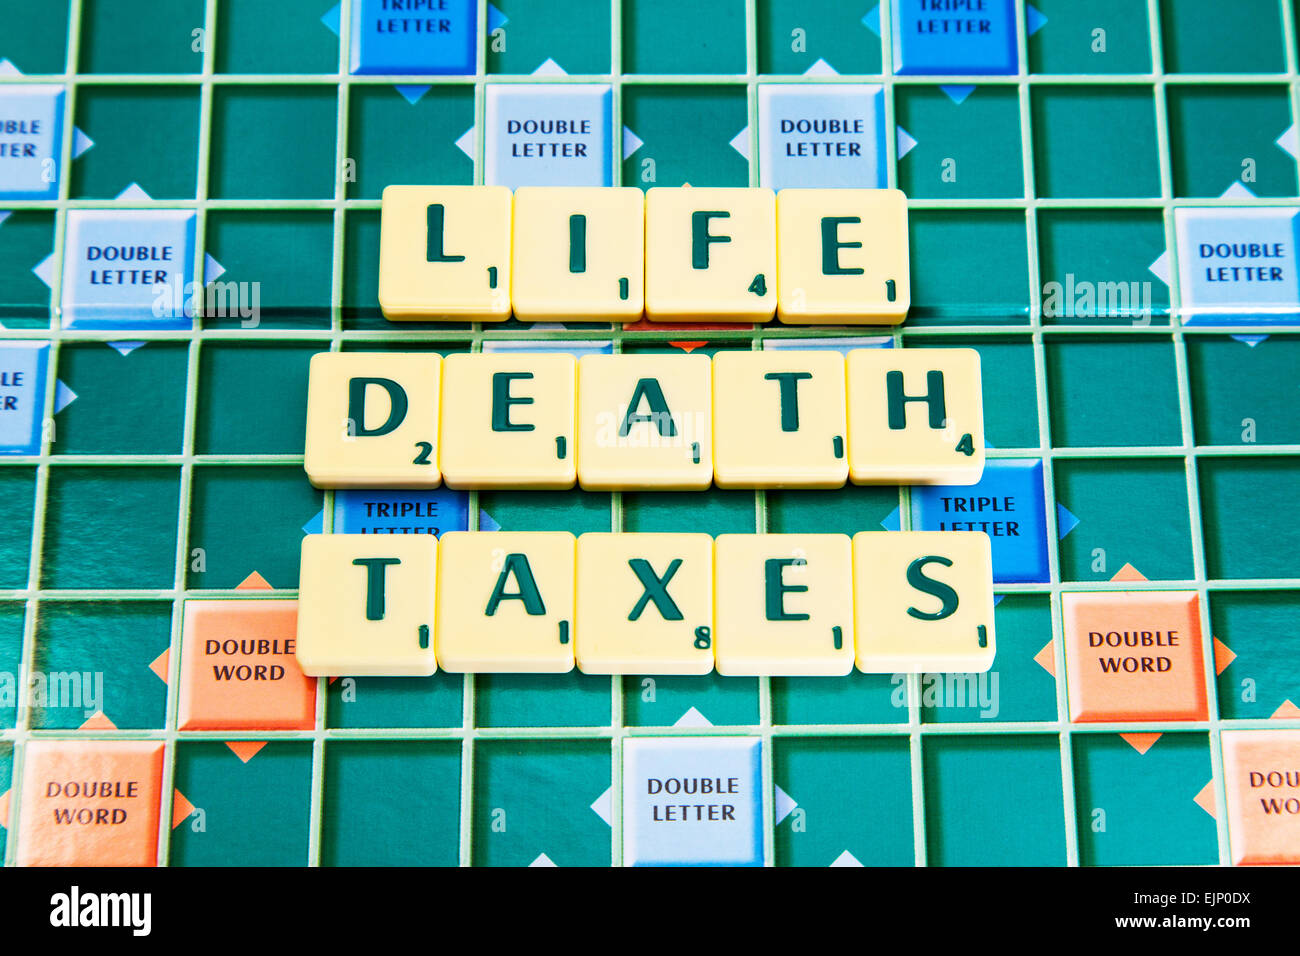 La mort vie impôts que 3 choses pour être sûr de la vie dans les mots en utilisant les tuiles de SCRABBLE pour illustrer l'orthographe spell out Banque D'Images